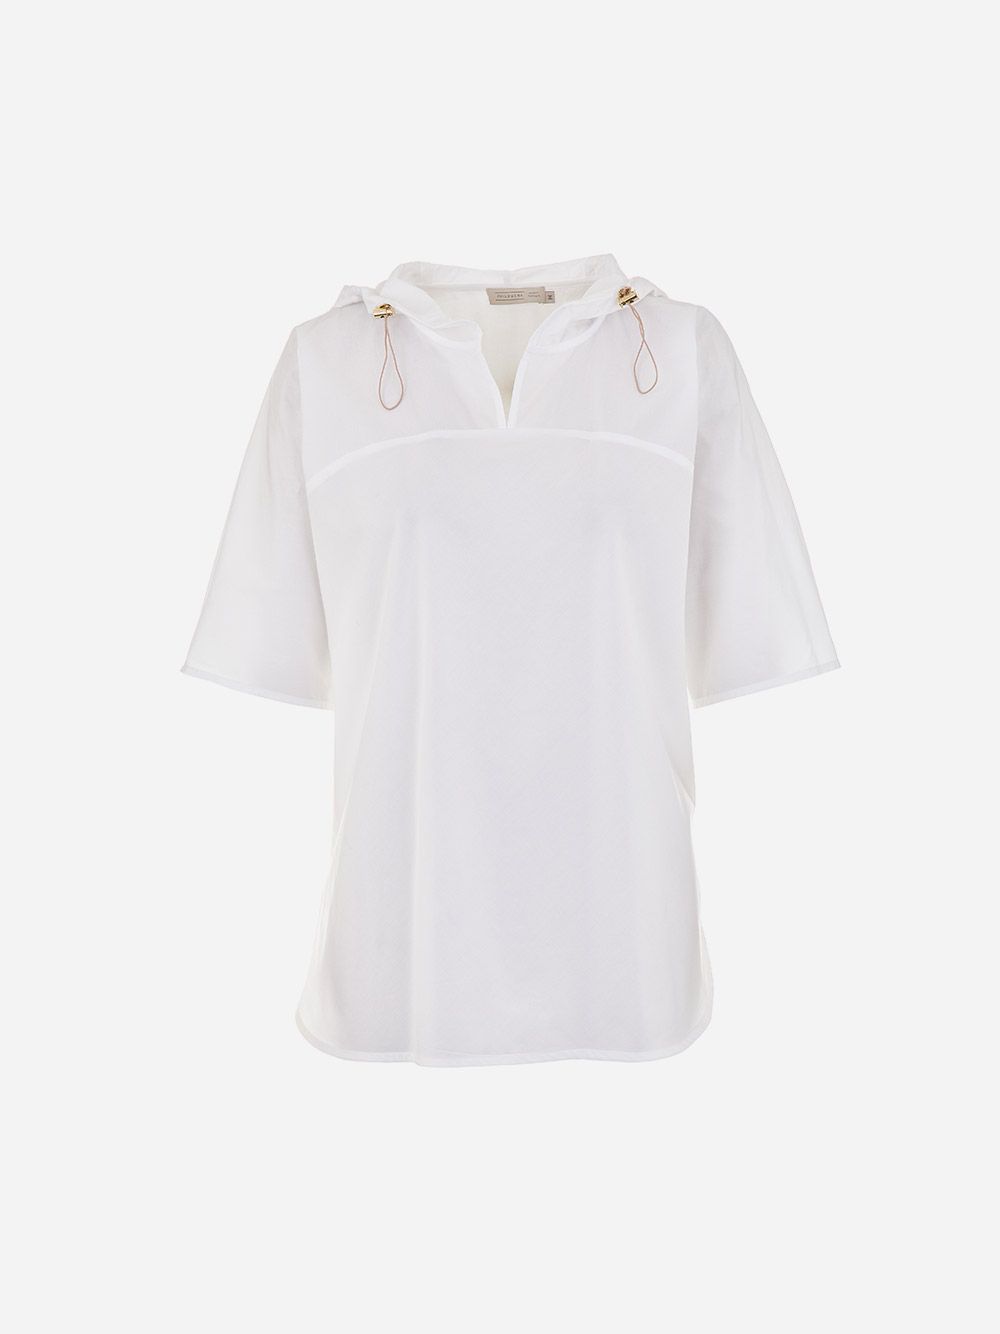 White Hooded Sweatshirt | Philomena